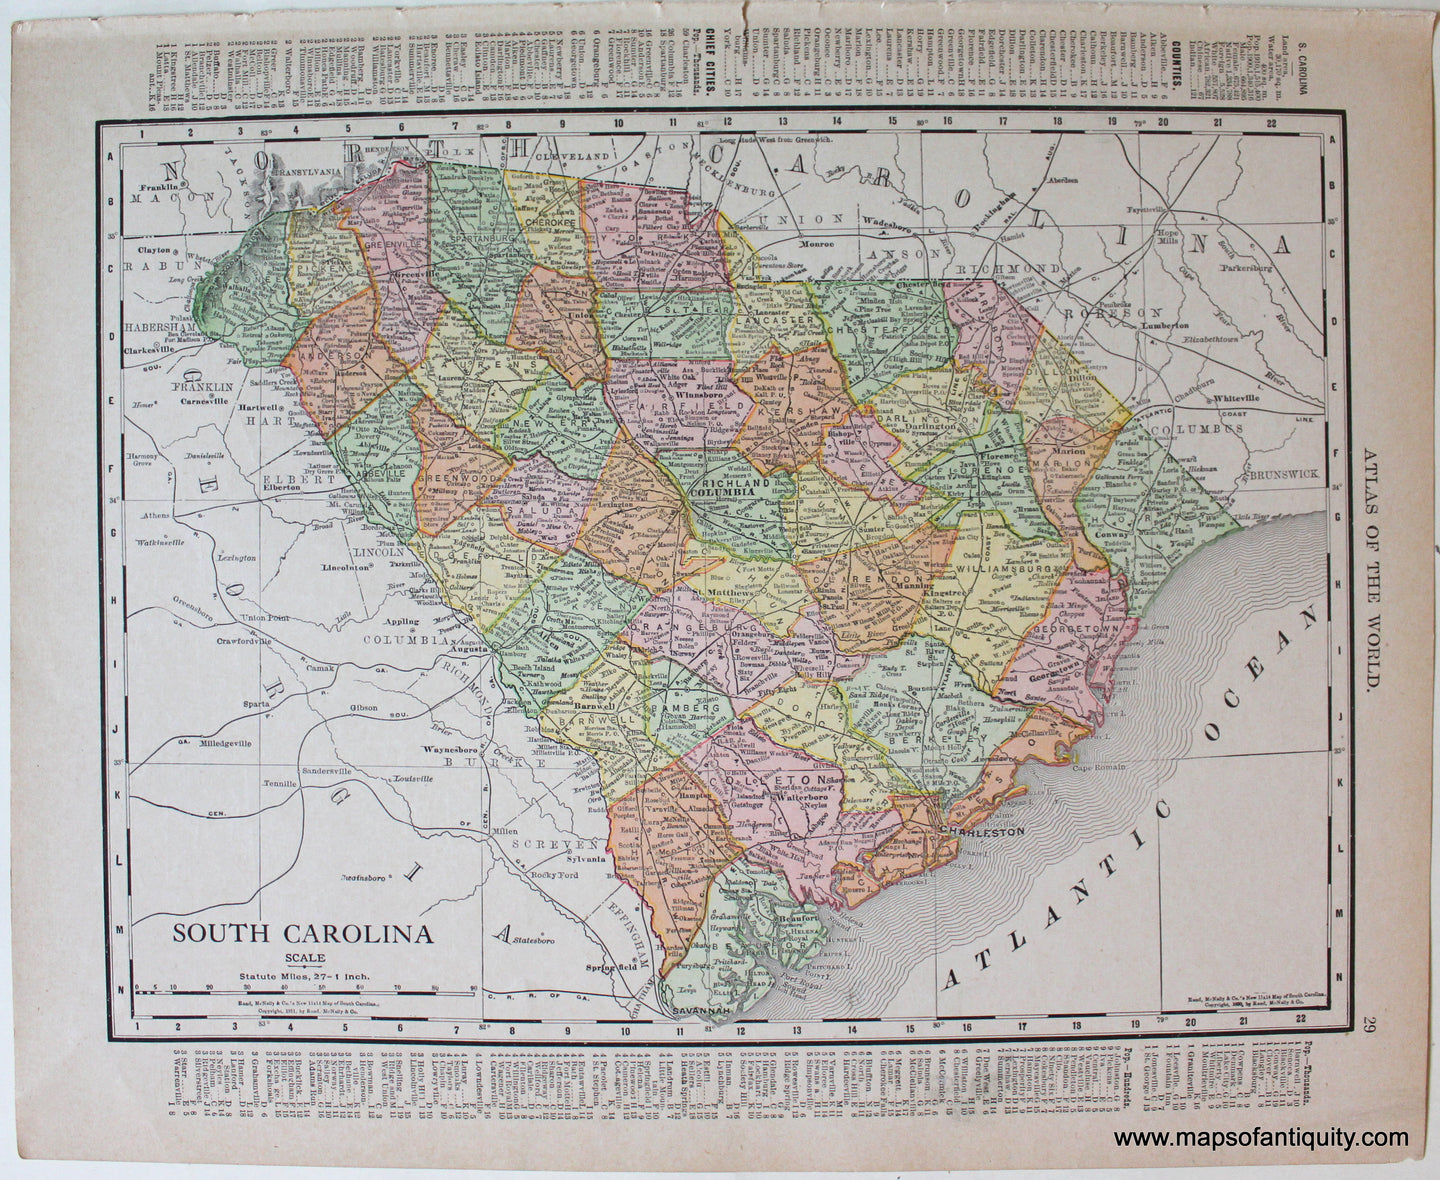 Antique-Printed-Color-Map-South-Carolina-verso:-Georgia-1911-Rand-McNally-South-South-Carolina-1900s-20th-century-Maps-of-Antiquity